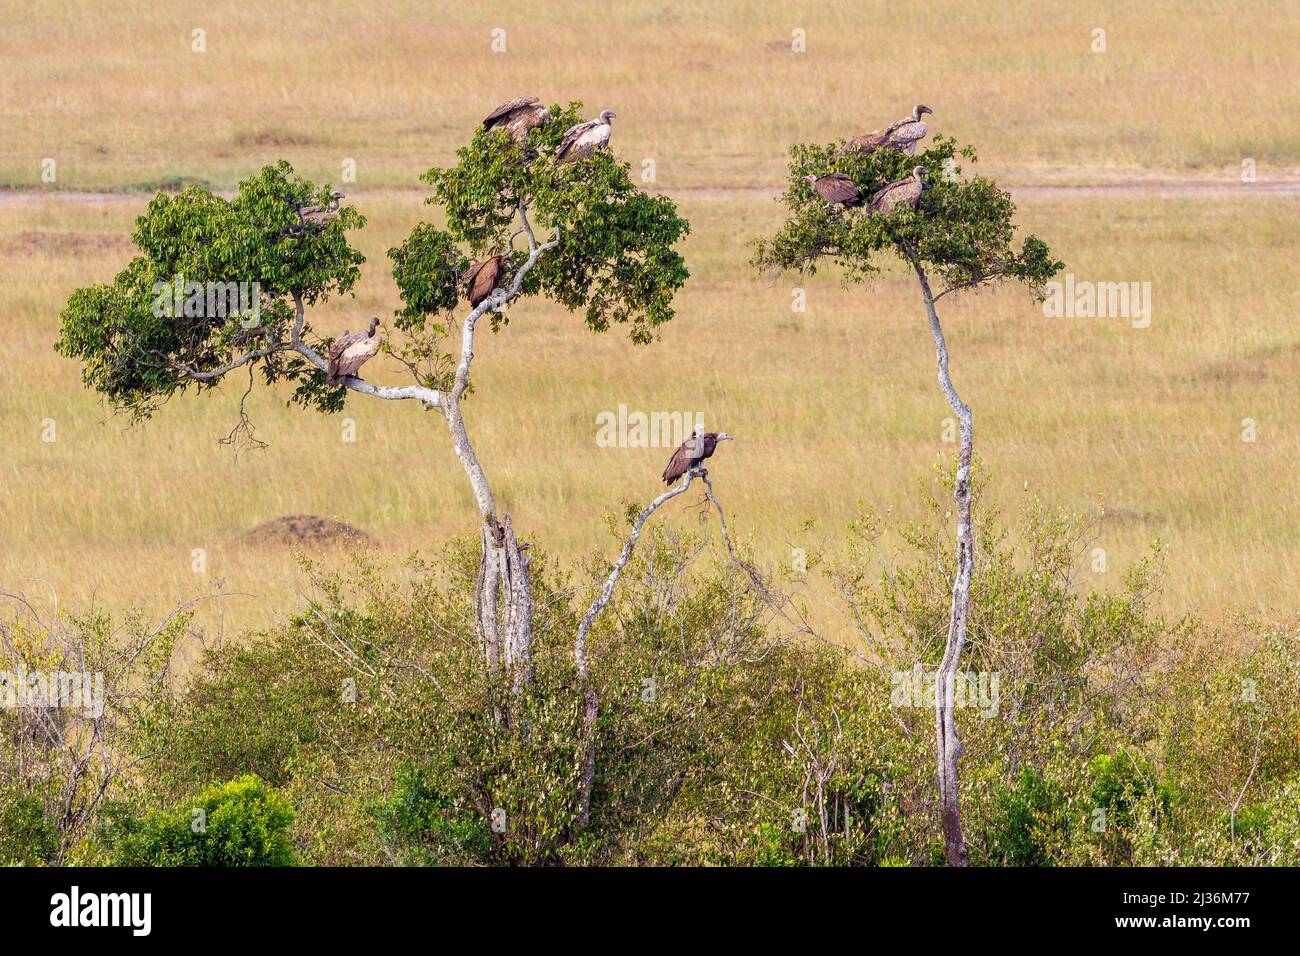 Rebaño con buitres sentados en un árbol en la reserva nacional Masai mara Foto de stock